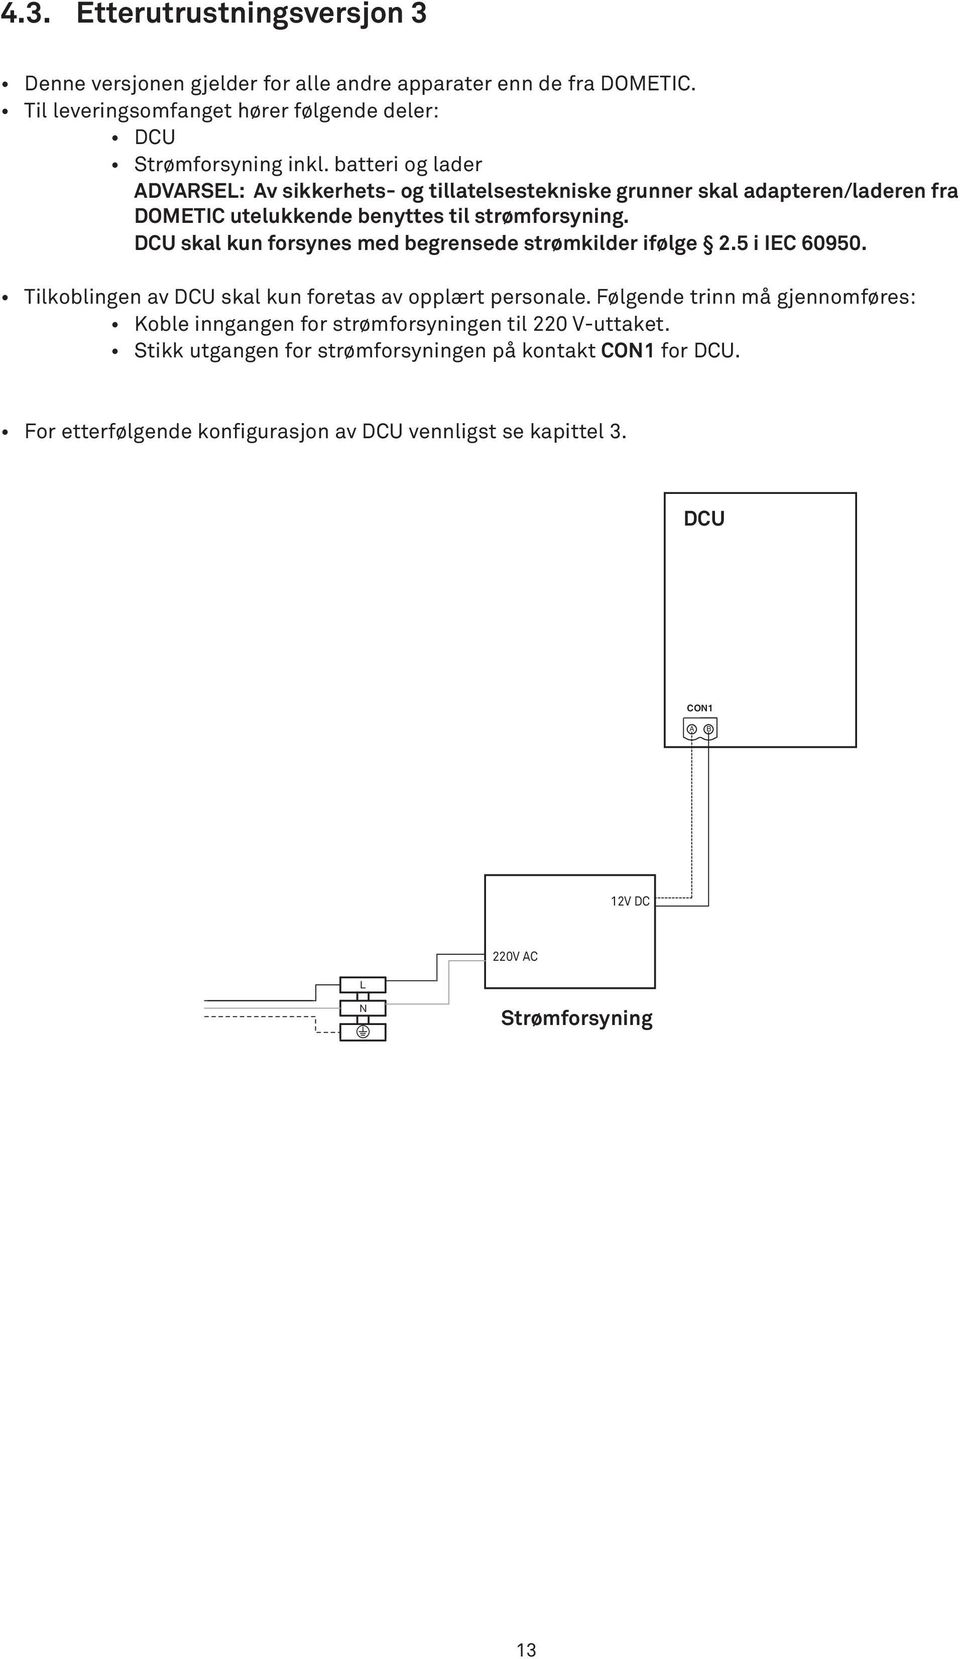 DCU skal kun forsynes med begrensede strømkilder ifølge 2.5 i IEC 60950. Tilkoblingen av DCU skal kun foretas av opplært personale.